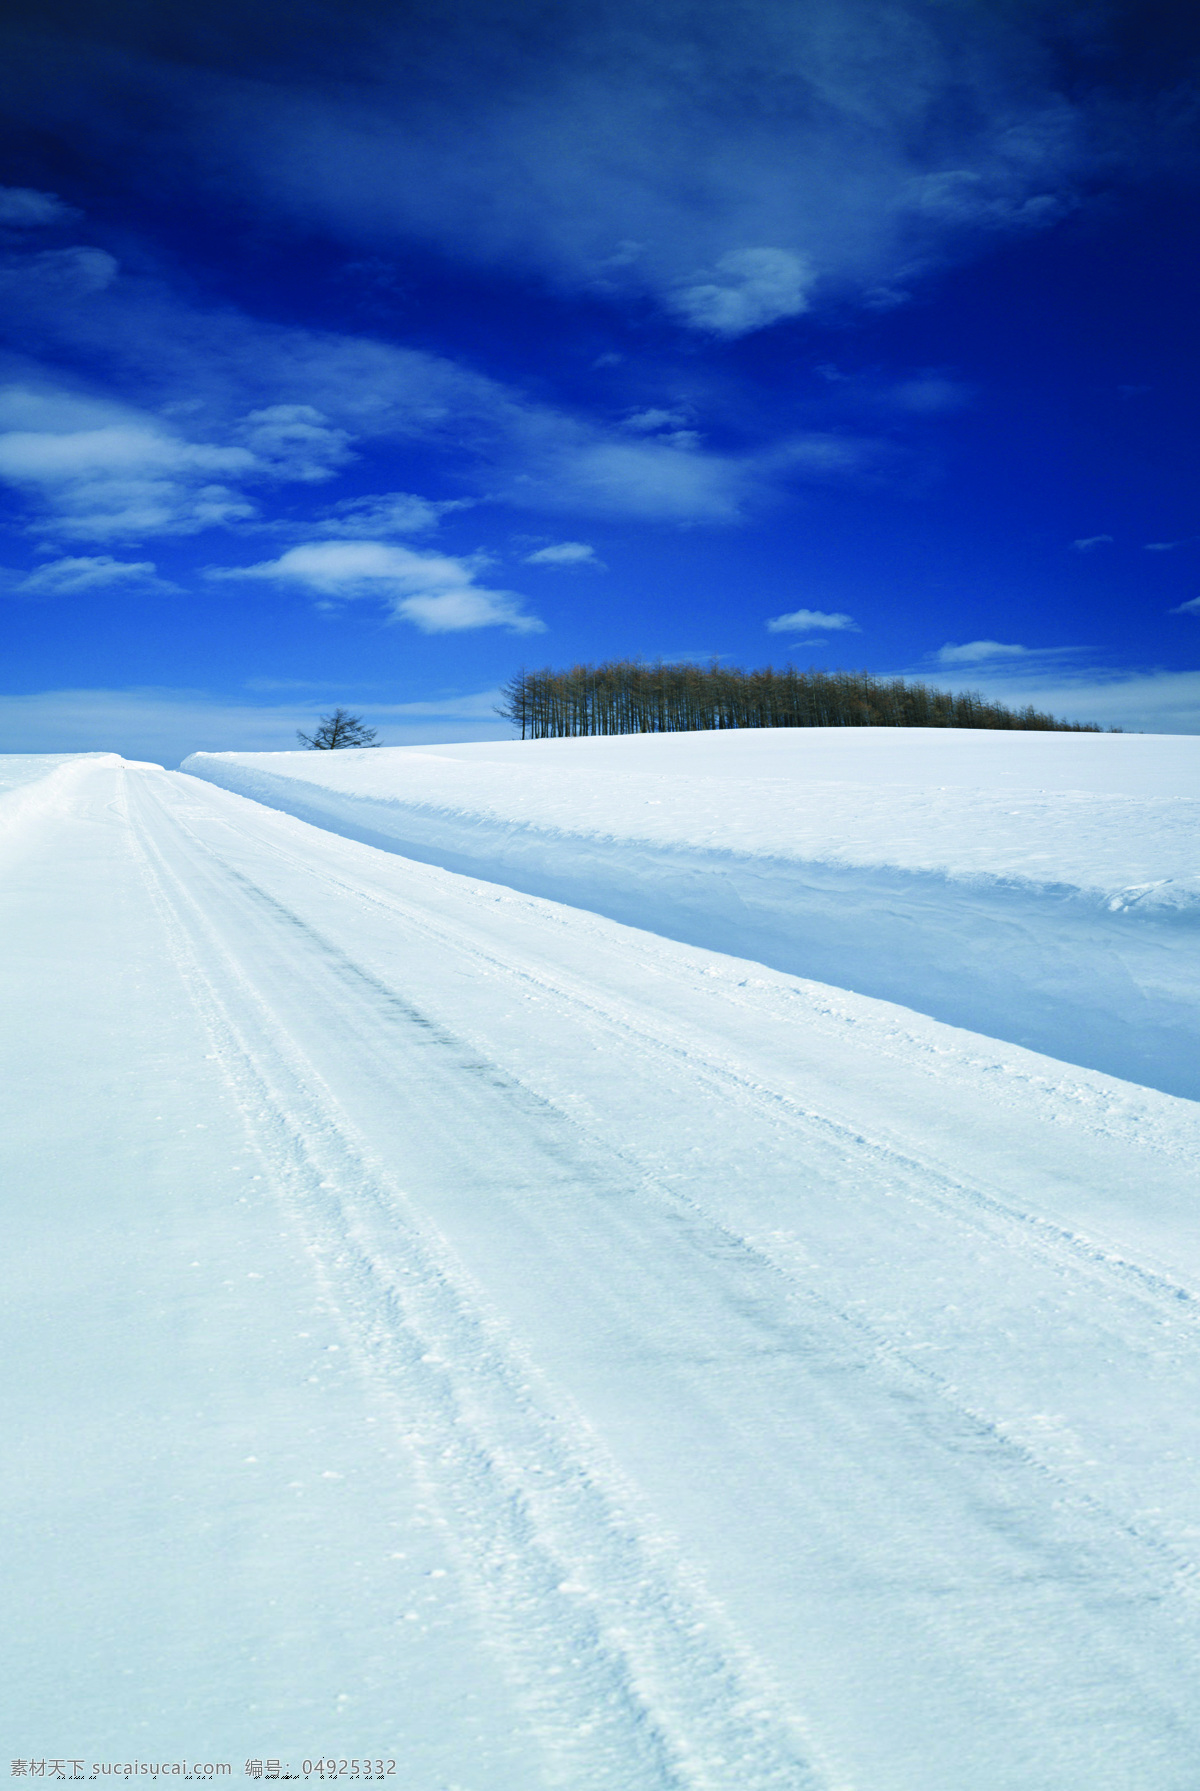 冬季冰雪道路 冬季 冰雪 道路 雪路 冰天雪地 郊外风光 自然景观 自然风景